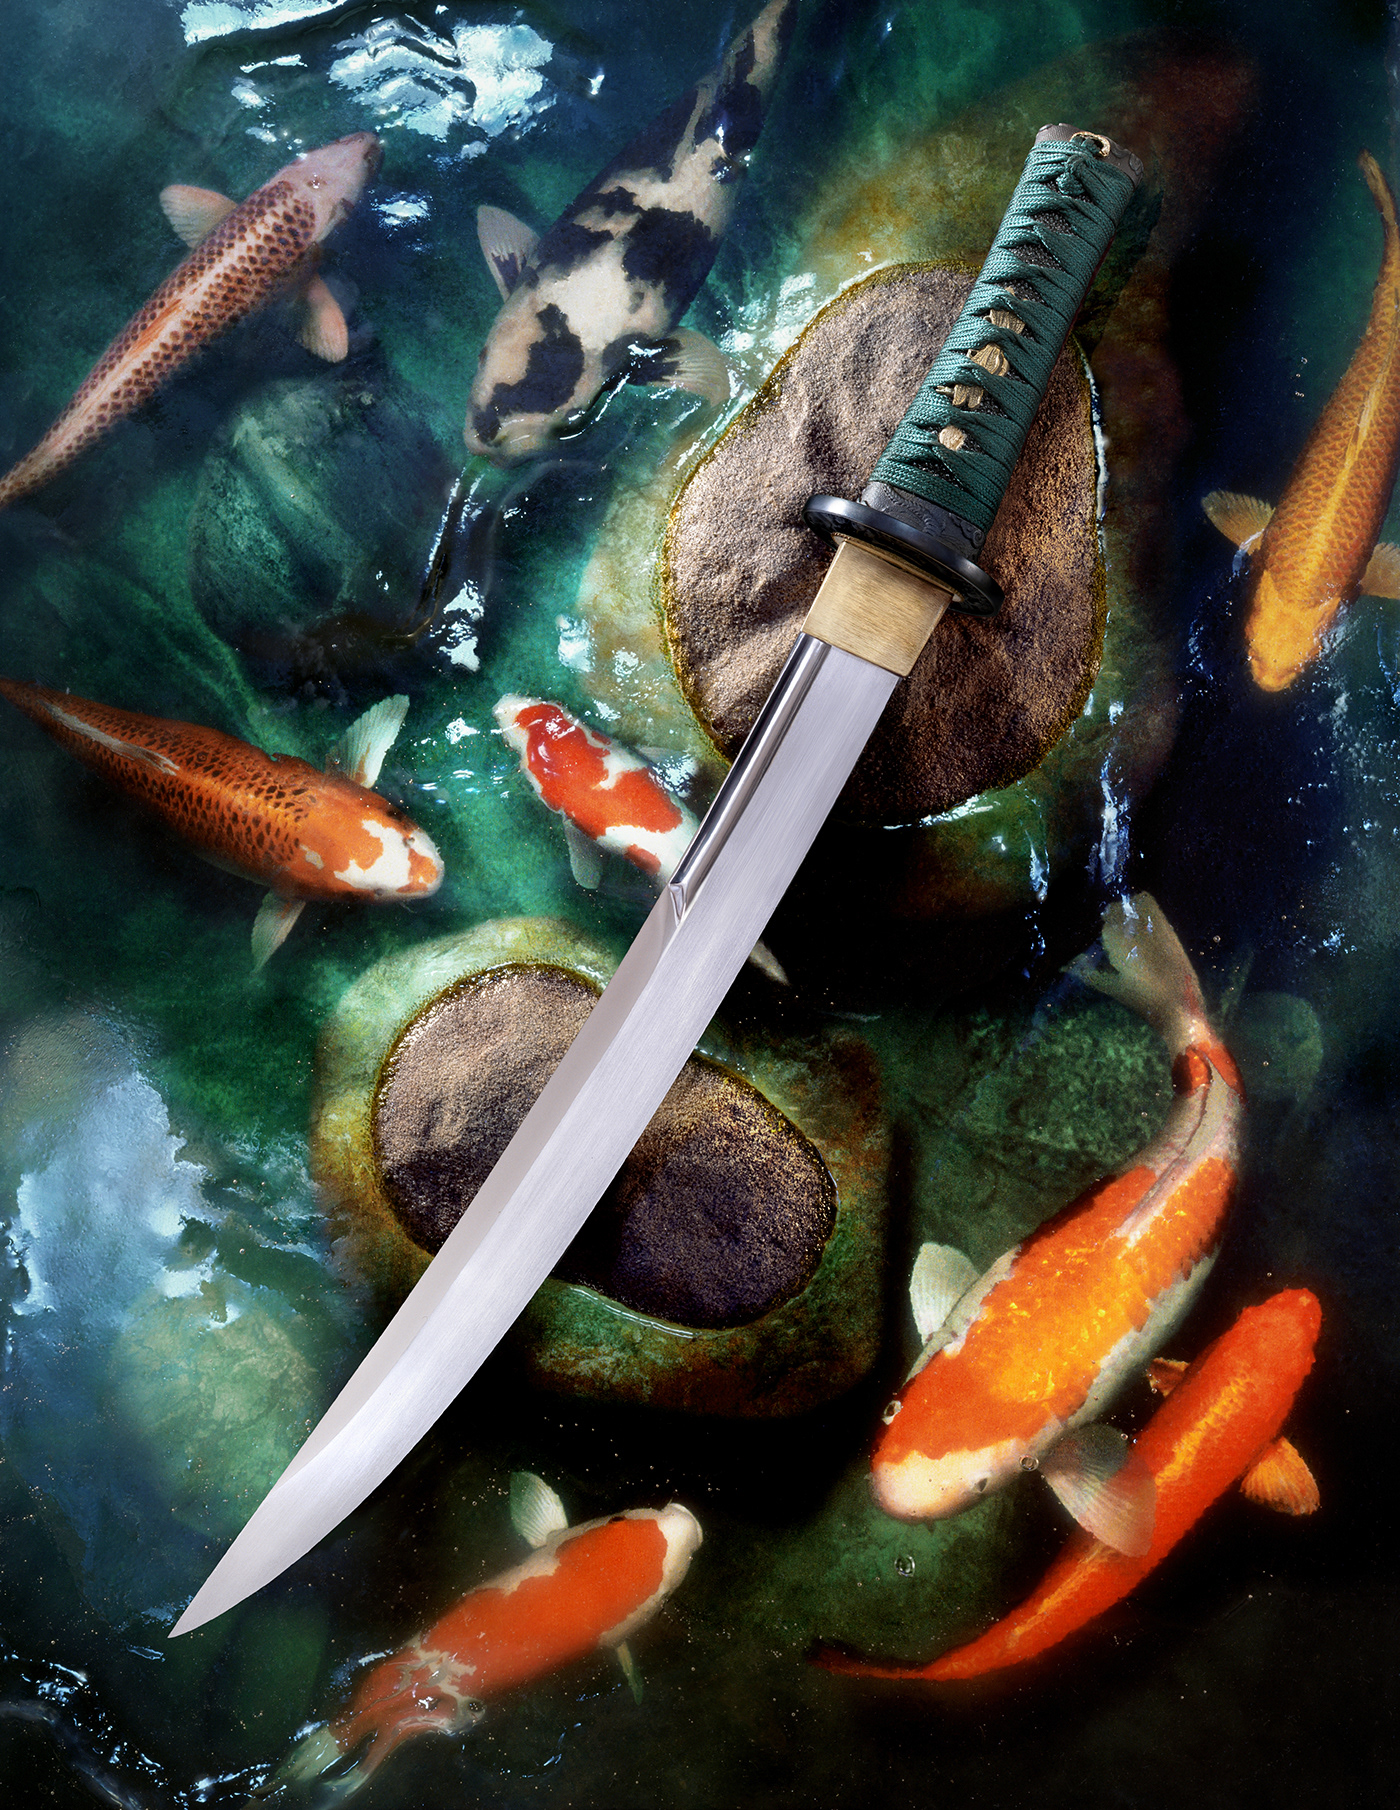 KOI FISH Sword knives knife katana japanese japan koi pond samurai Blade